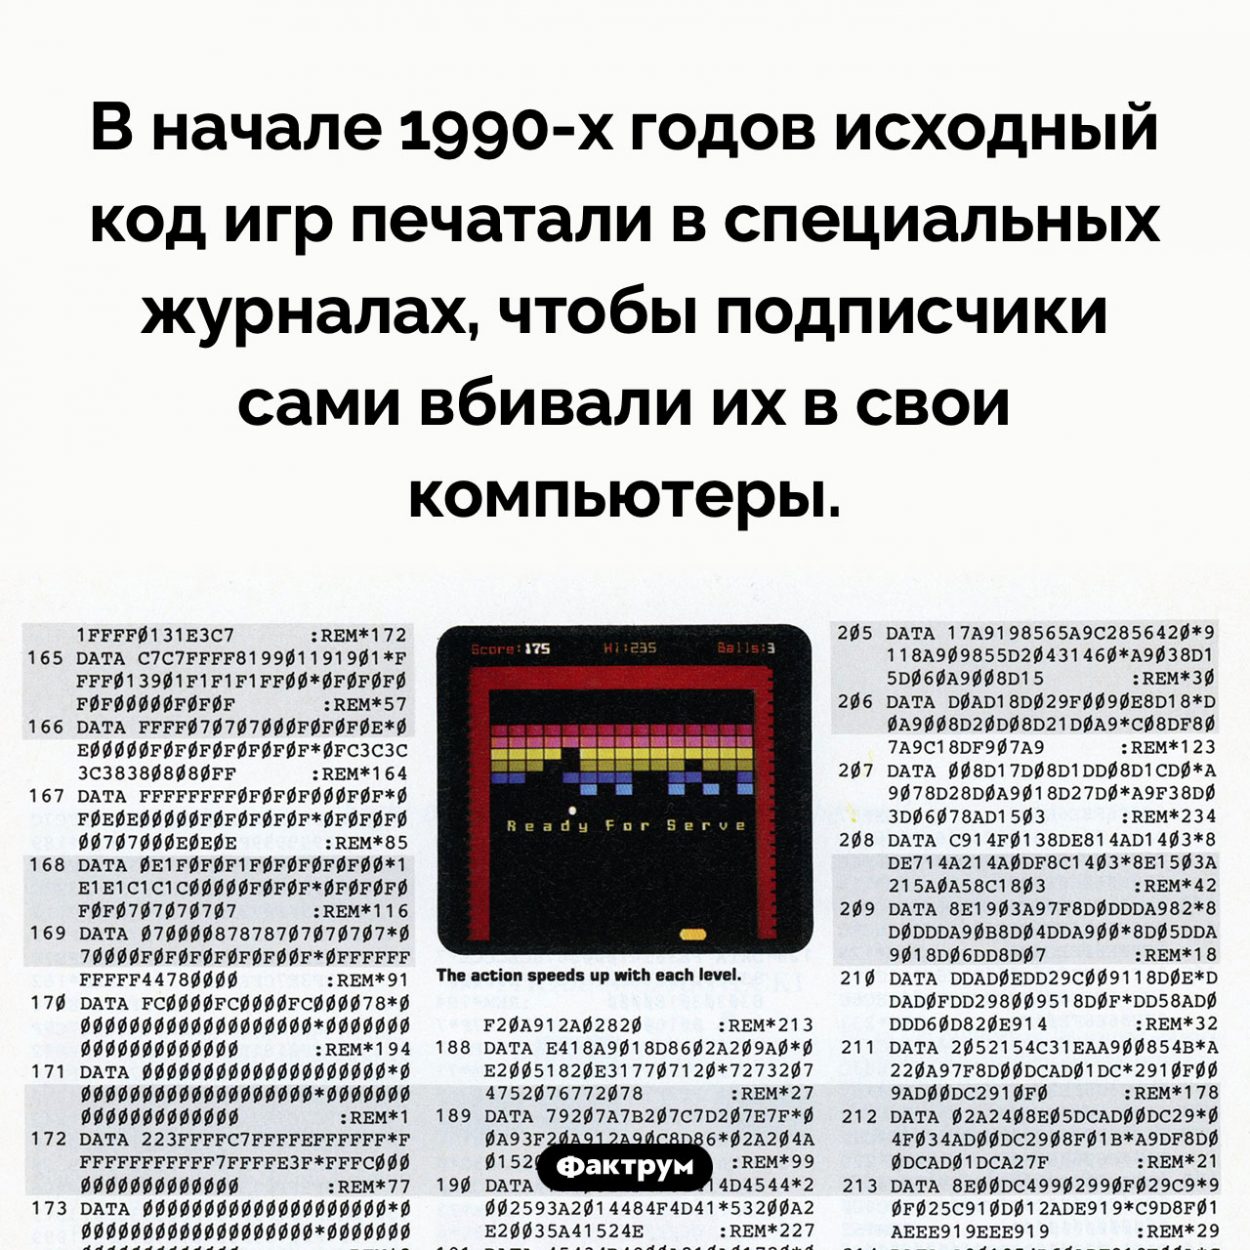 В девяностых годах исходный код компьютерных игр печатали в журналах. В начале 1990-х годов исходный код игр печатали в специальных журналах, чтобы подписчики сами вбивали их в свои компьютеры.